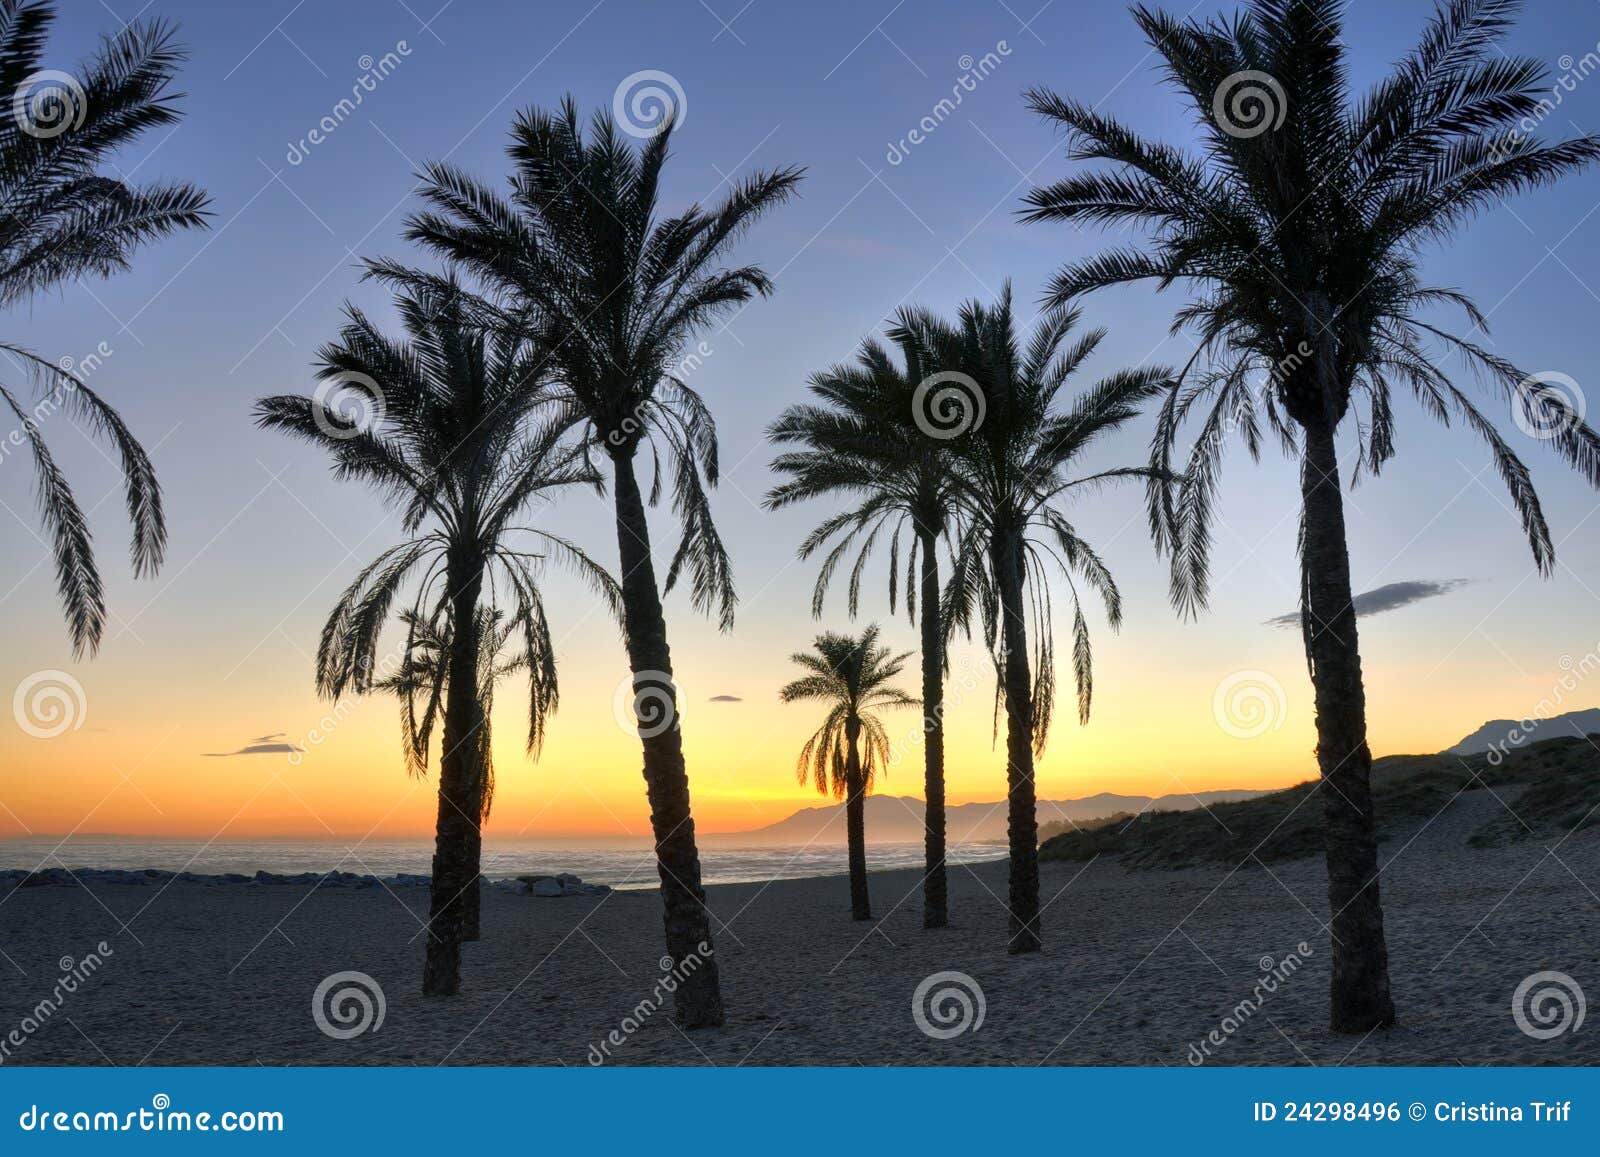 palm tree silhouettes - costa del sol